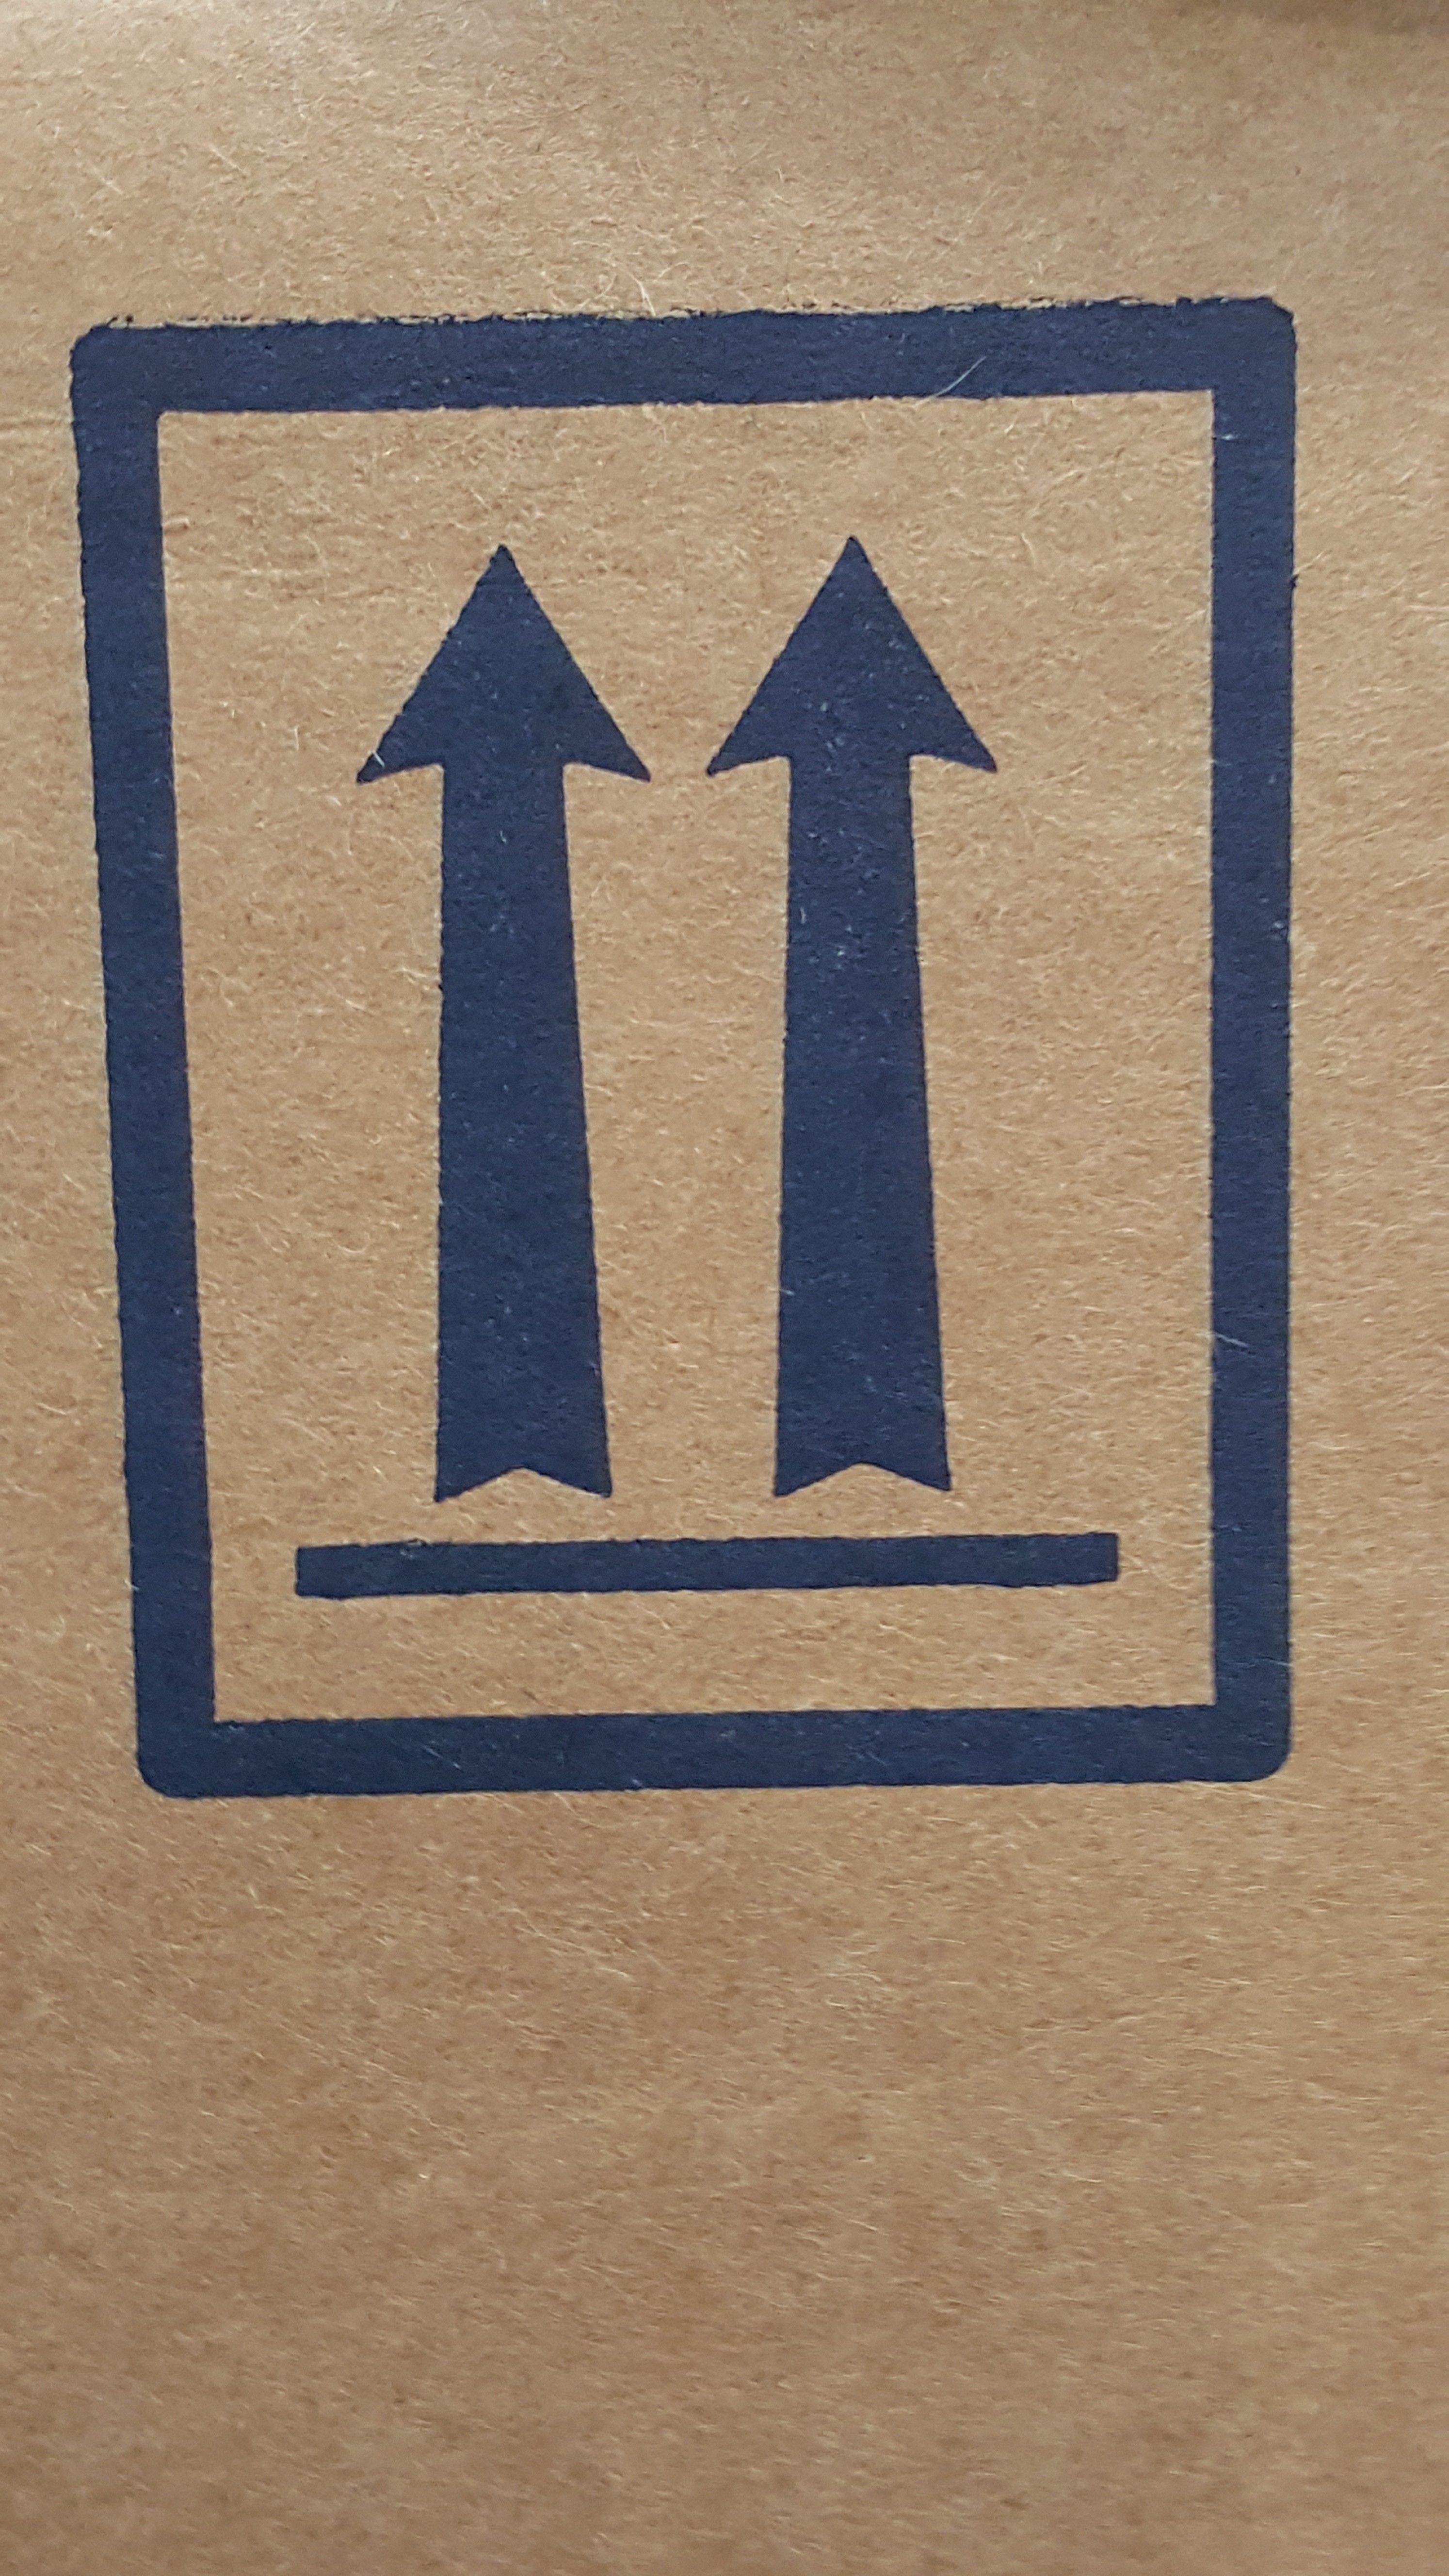 Two Upward Arrows Logo - Package Orientation Arrows on HazMat Packaging - Daniels Training ...